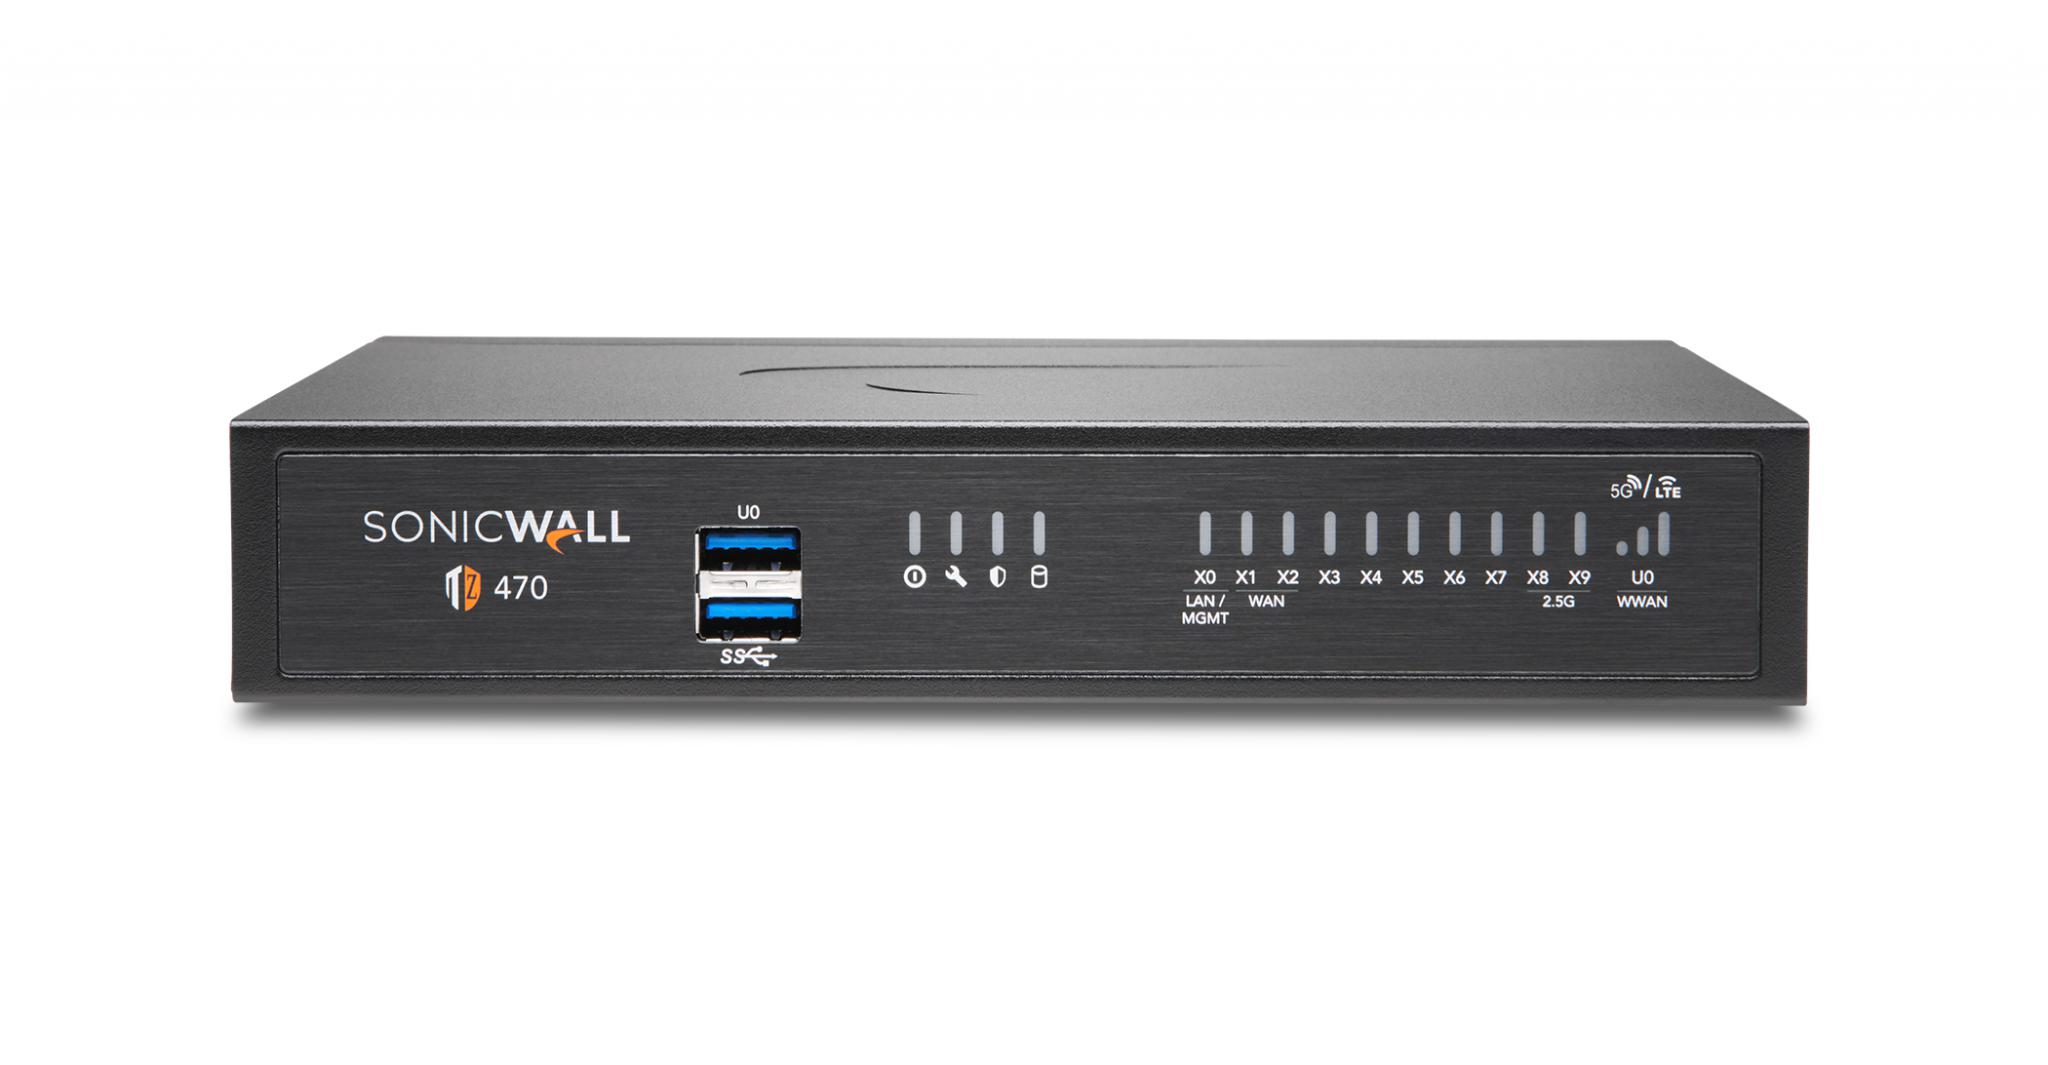 Firewall SonicWall model TZ470 8xGbE 2xUSB 3.0 firewall throughput3.5Gbps, IPS throughput 2.Gbps, VPN throughput 1.5Gbps, maxim 150clienti SSL VPN, rackmount kit separat (02-SSC-3113), PSU alimentator(36W), necesita licenta aditionala servicii securitate